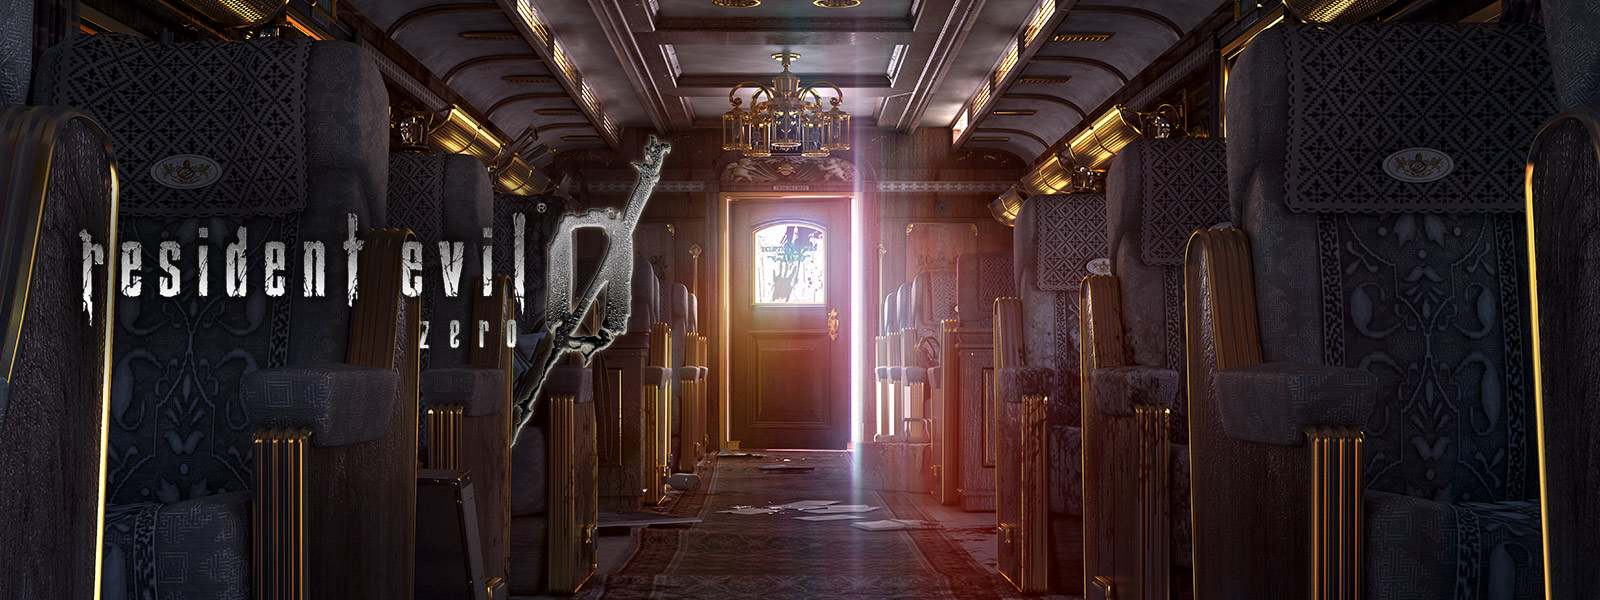 Resident Evil 0, kuvakaappaus luksusjunan sisätiloista